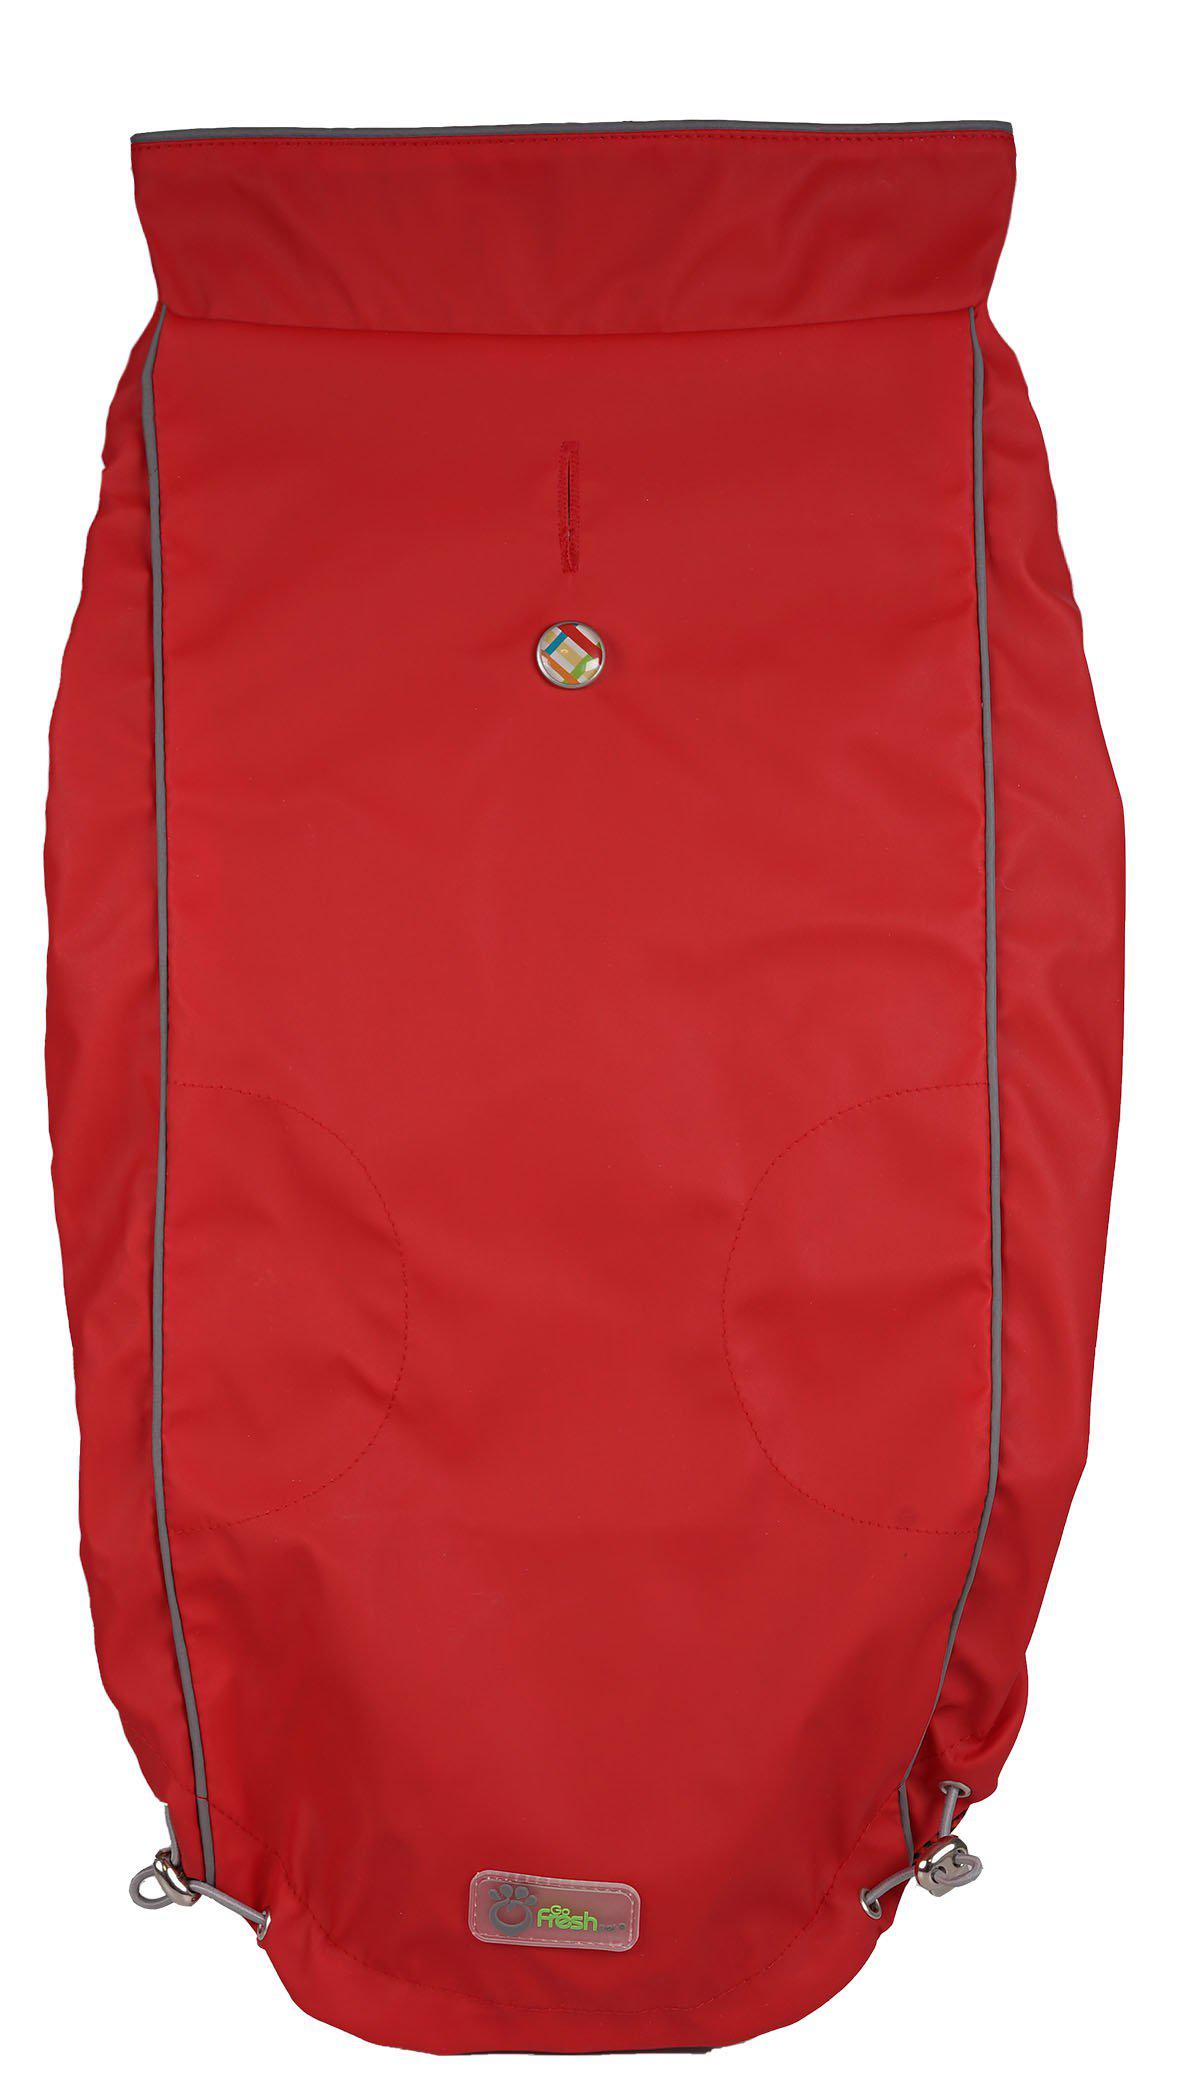 GO FRESH PET - Reversible Rain Jacket Scarlet Red Xs 29Cm - (632.7012) - Kjæledyr og utstyr